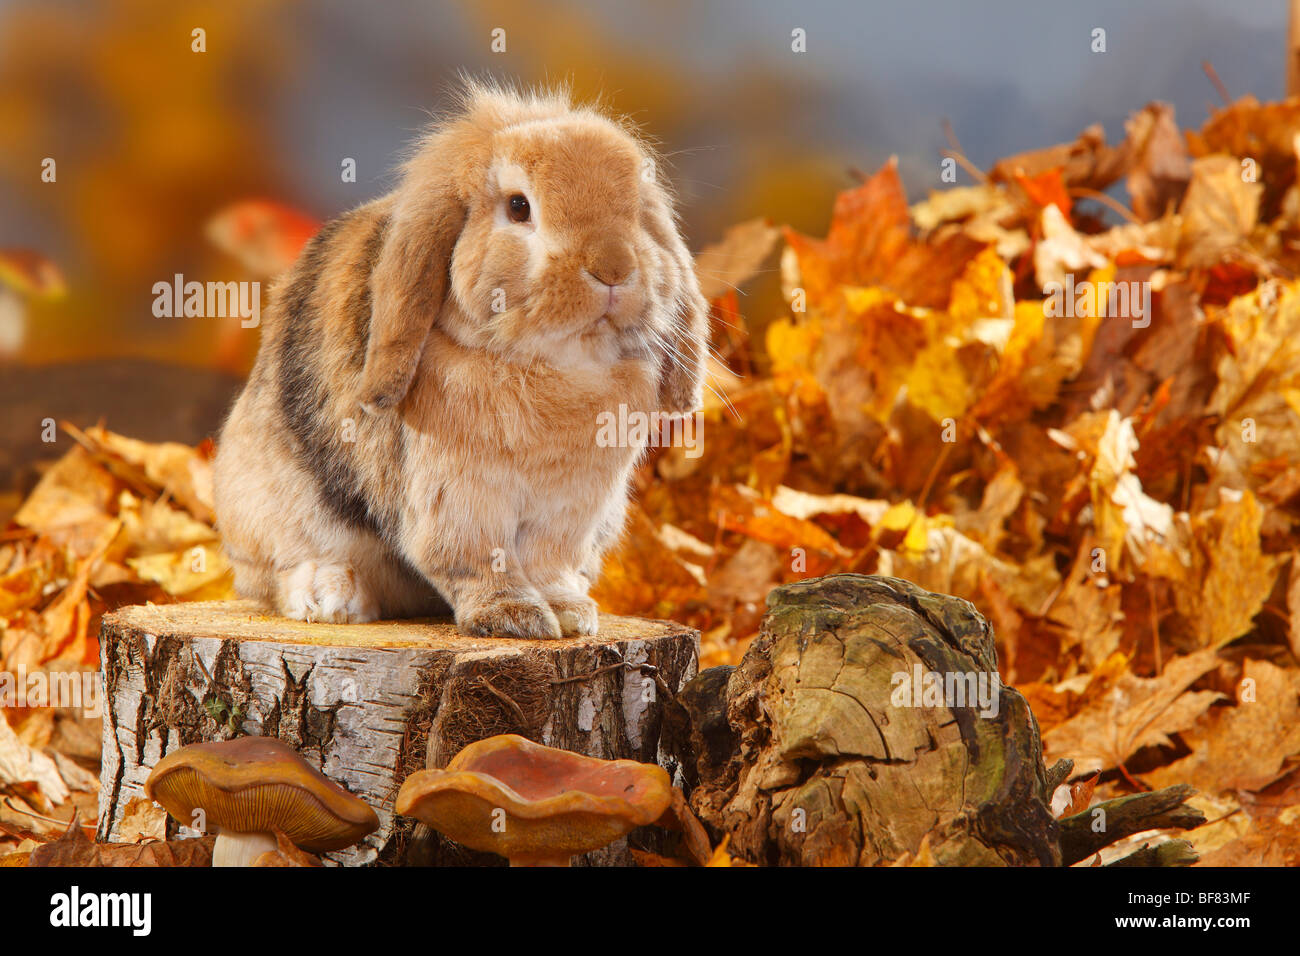 Lop-eared Dwarf Rabbit / Domestic Rabbit Stock Photo